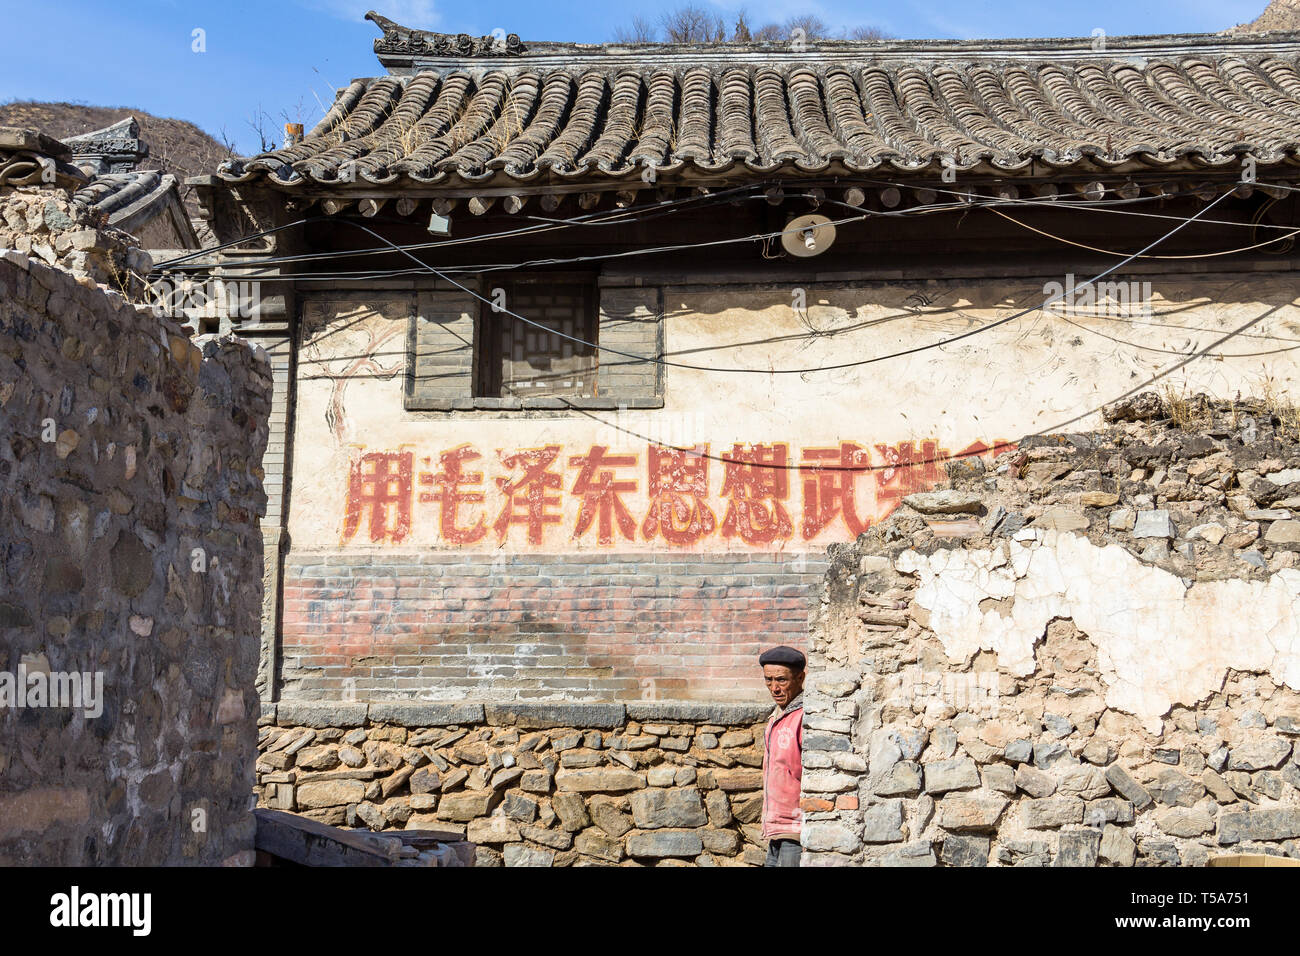 Mär 2014, Chuandixia, Hebei, China: Einige maoistische Slogans von der Kulturrevolution sind noch sichtbar an den Wänden dieser alten Ming Dynastie Villa Stockfoto